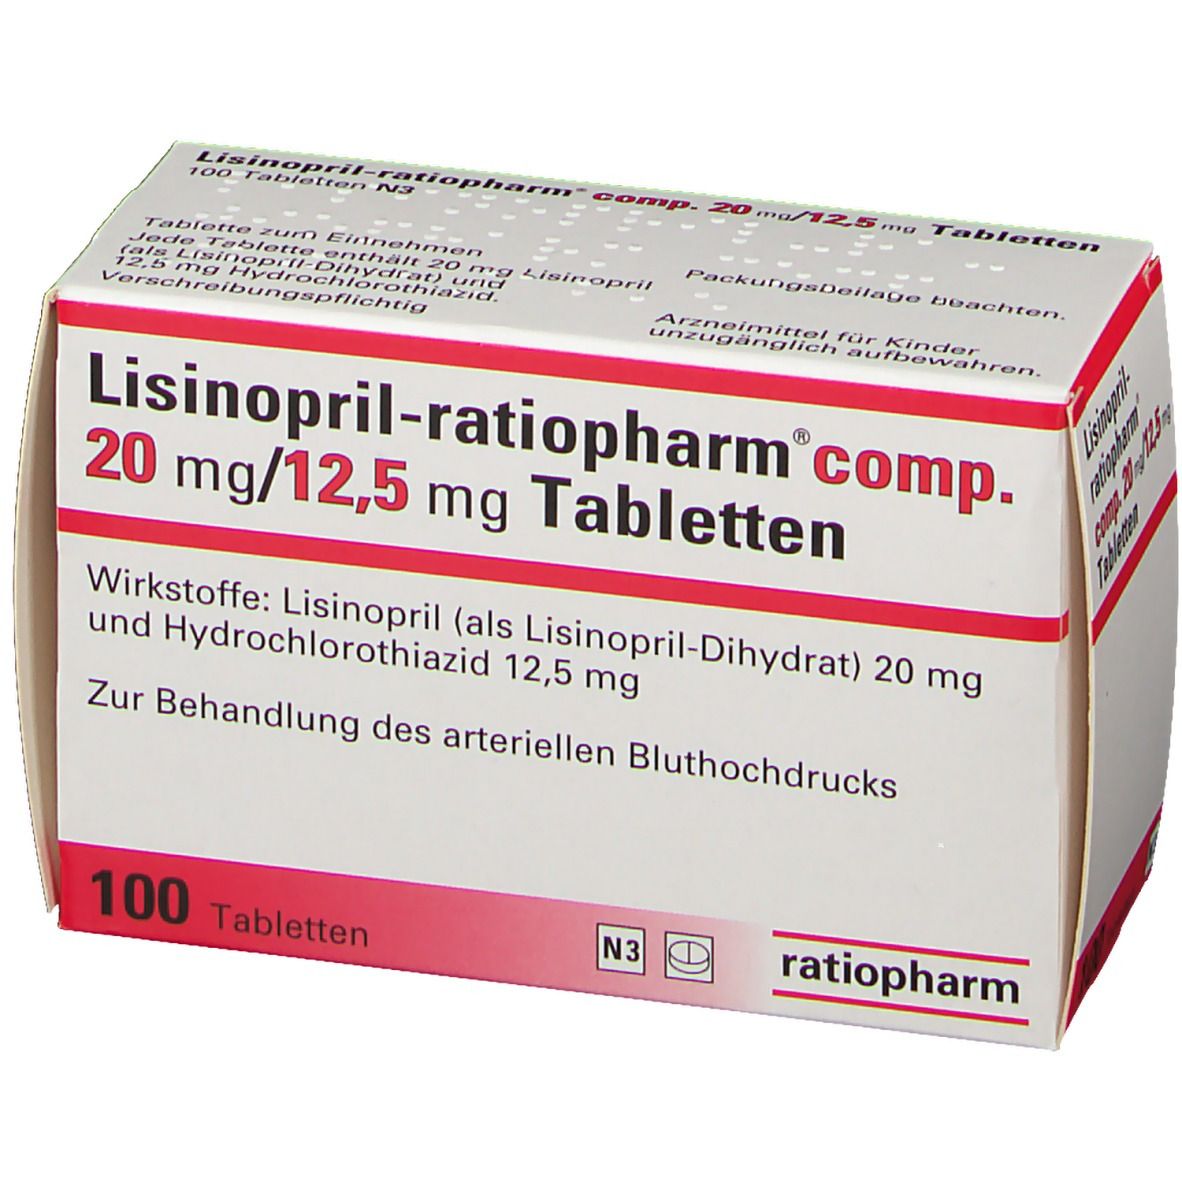 Lisinopril-ratiopharm® comp. 20 mg/12,5 mg